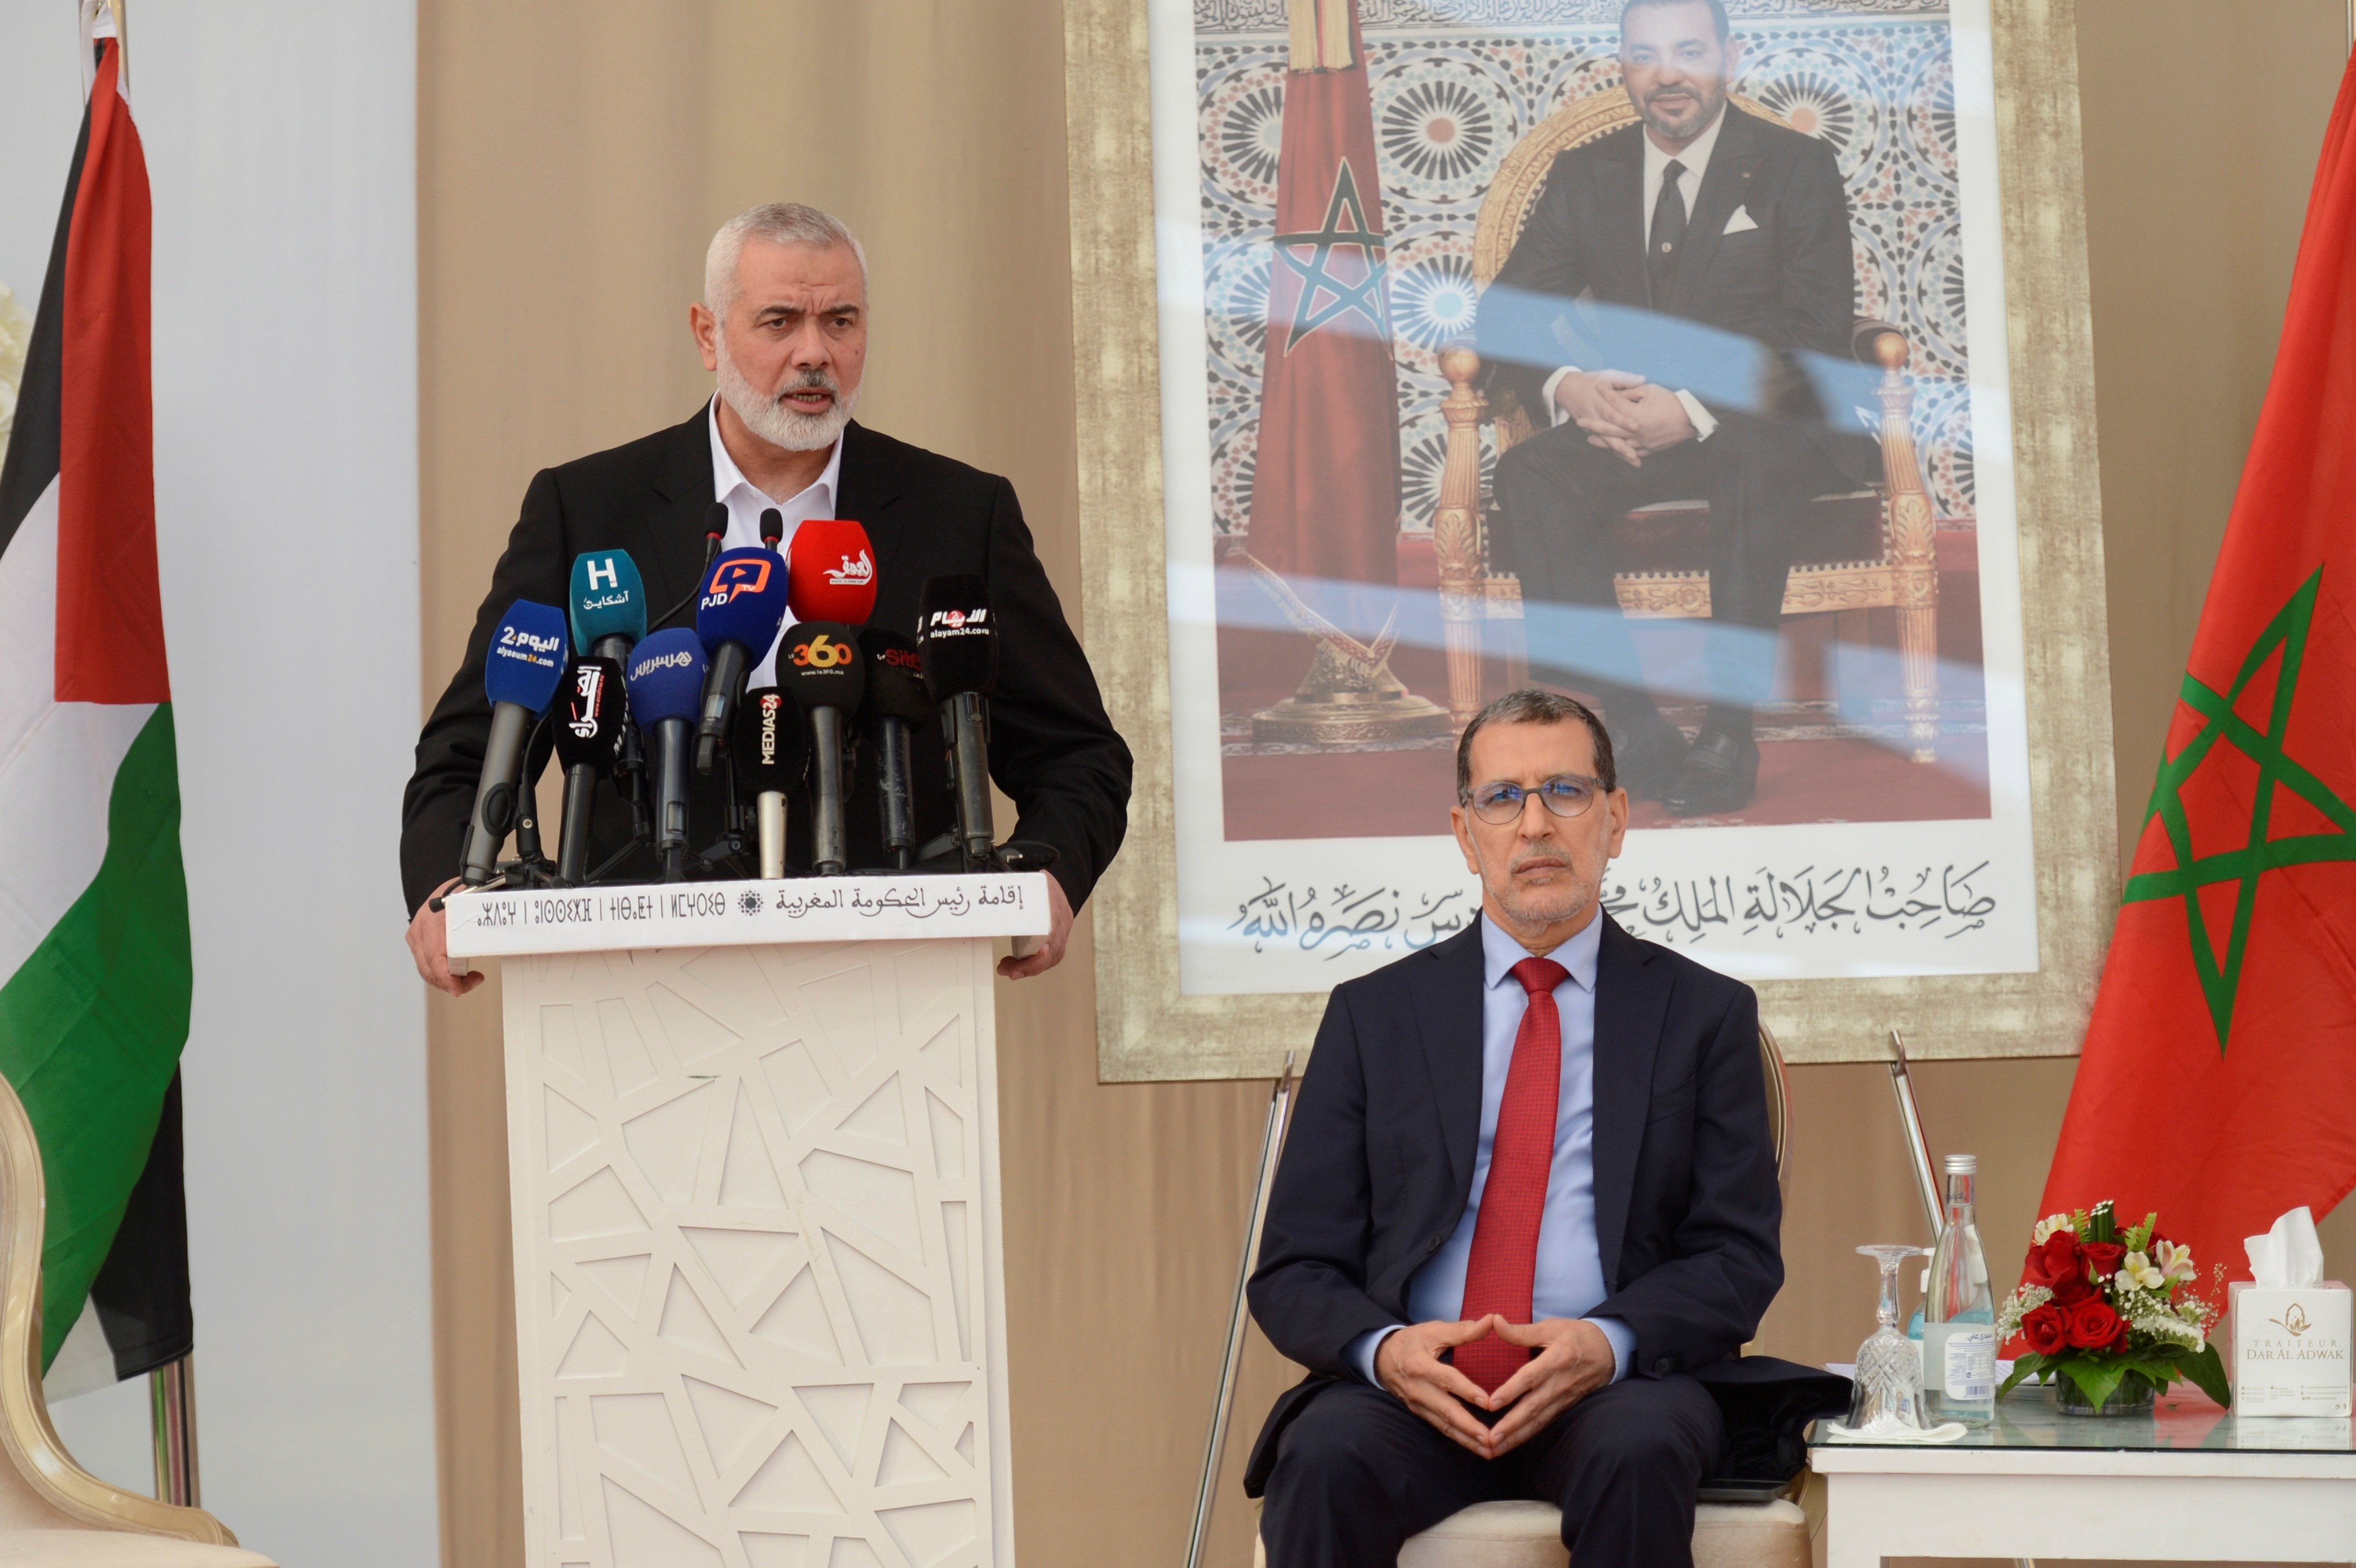 Visita del líder de Hamás a Marruecos, en pleno reconocimiento de Israel